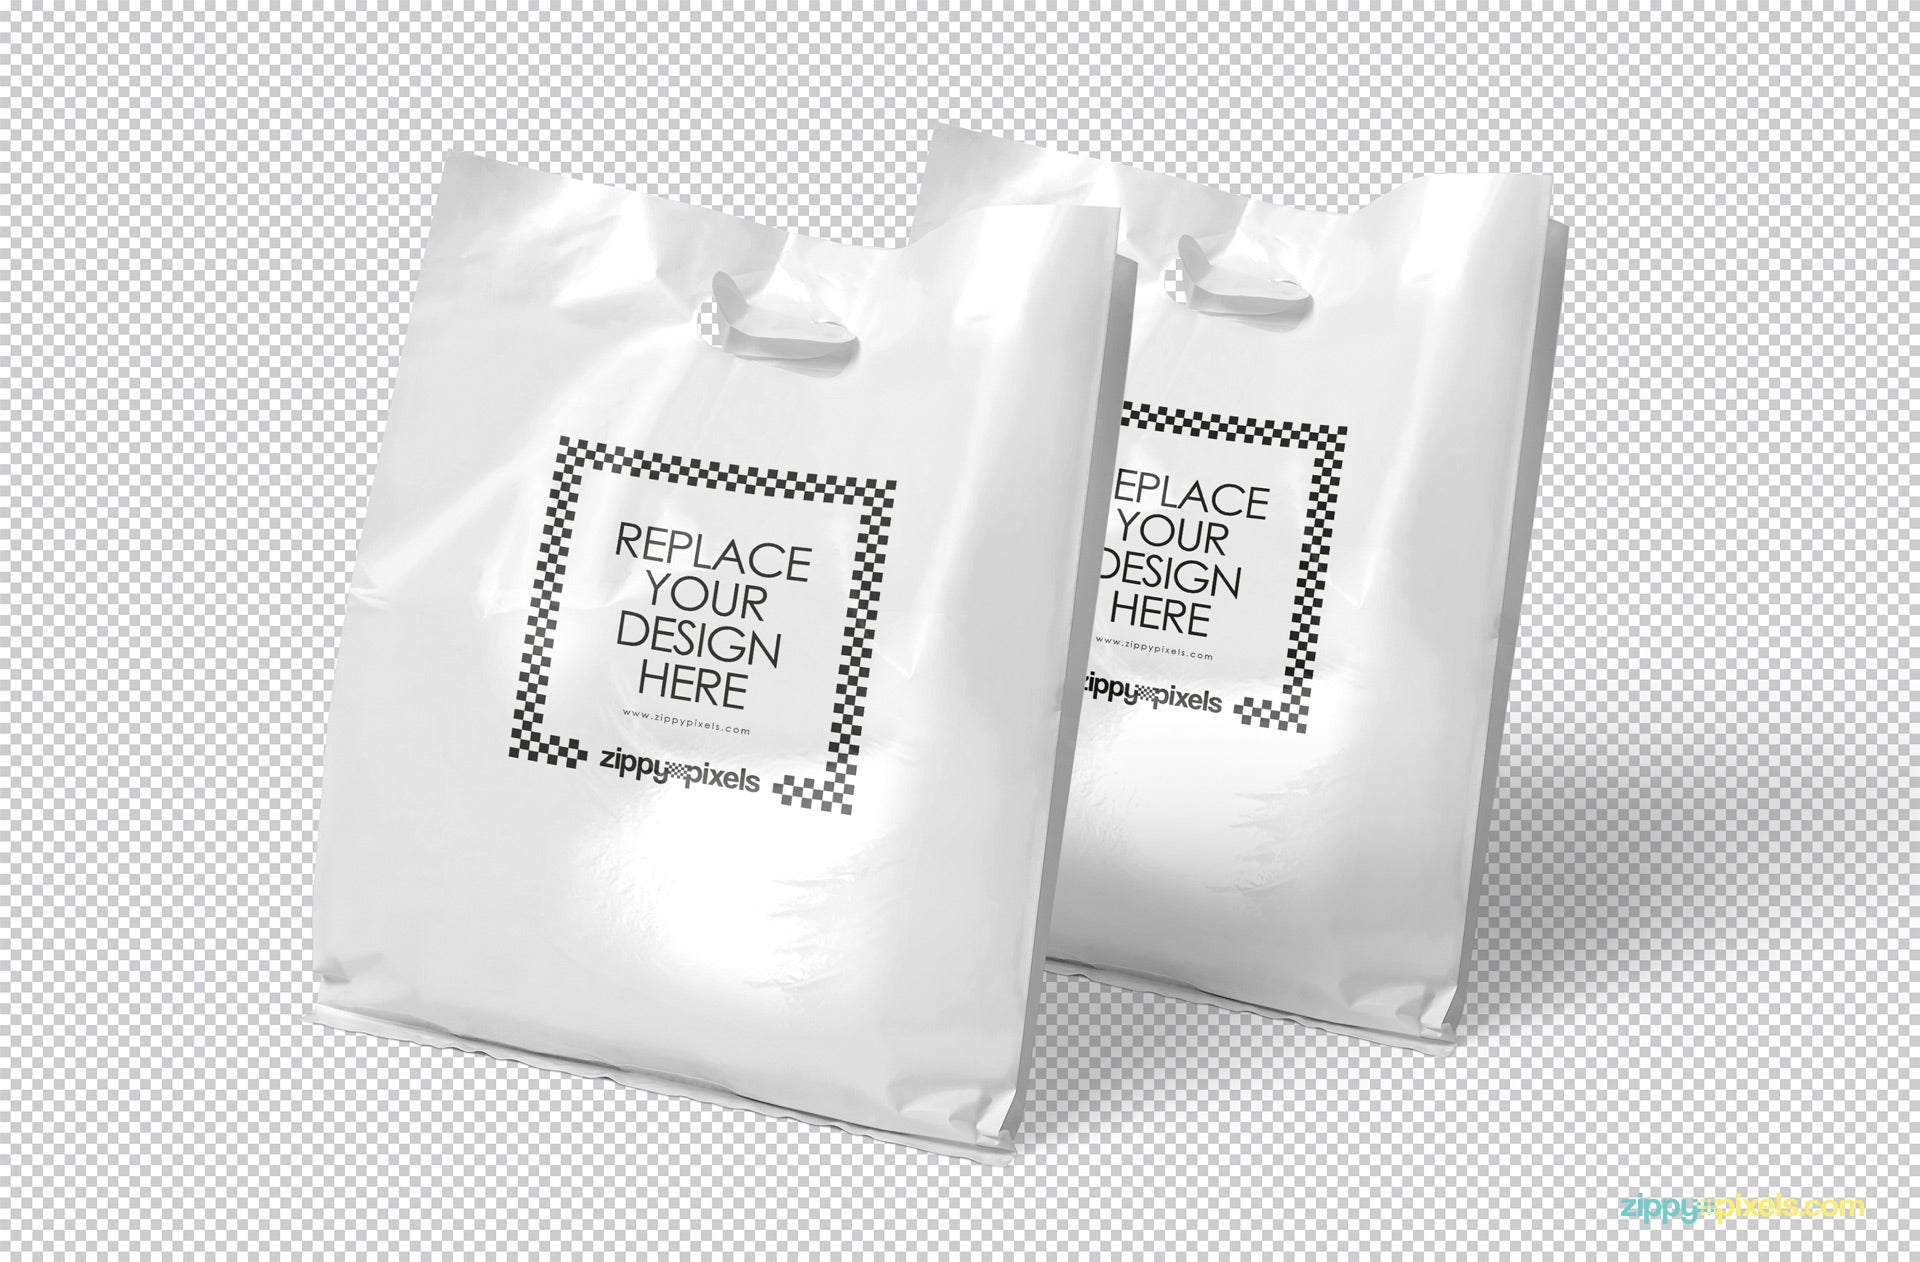 Plastic Bag Mockup Psd Free Download : 4682+ Plastic Bag Mockups Vk ...